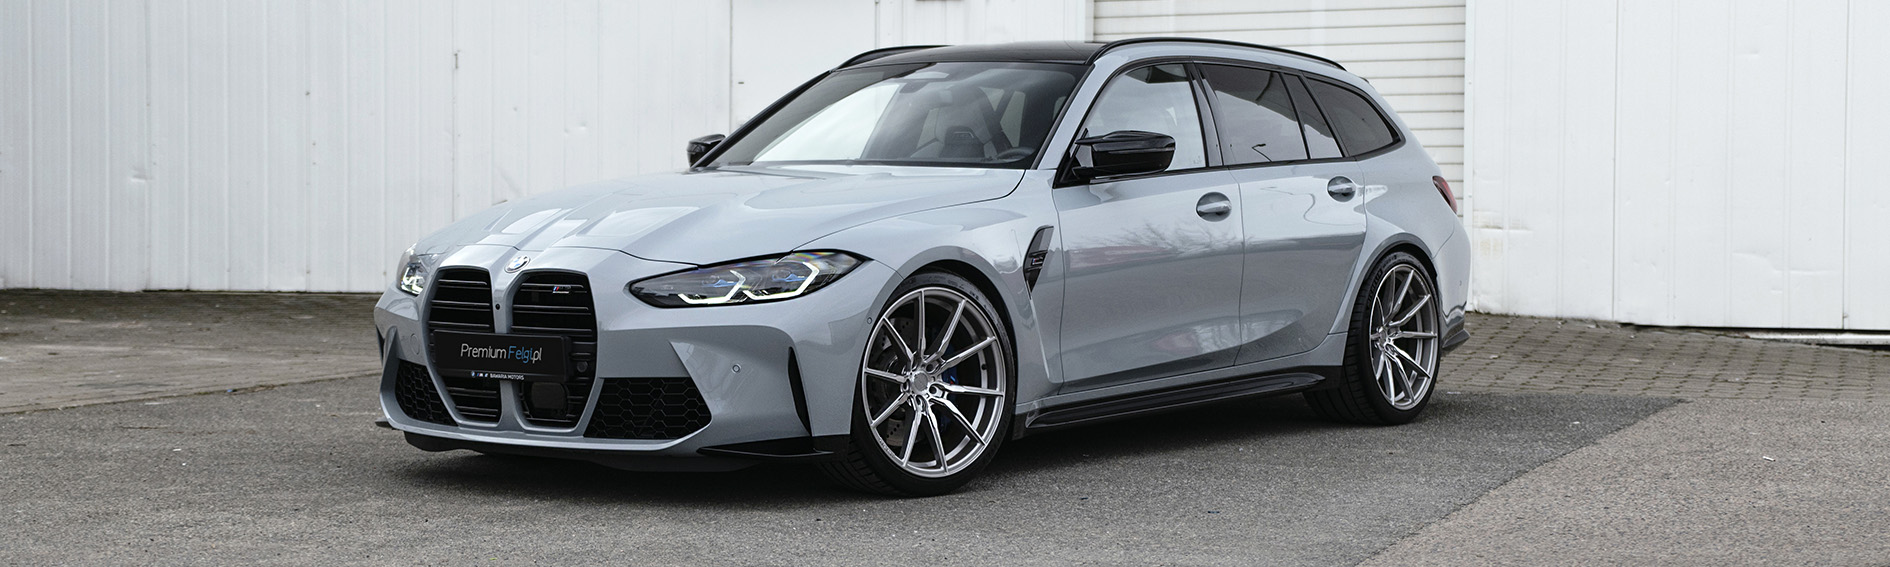 Realizacje - PremiumFelgi.pl BMW M3 | Concaver CVR4 - PremiumFelgi